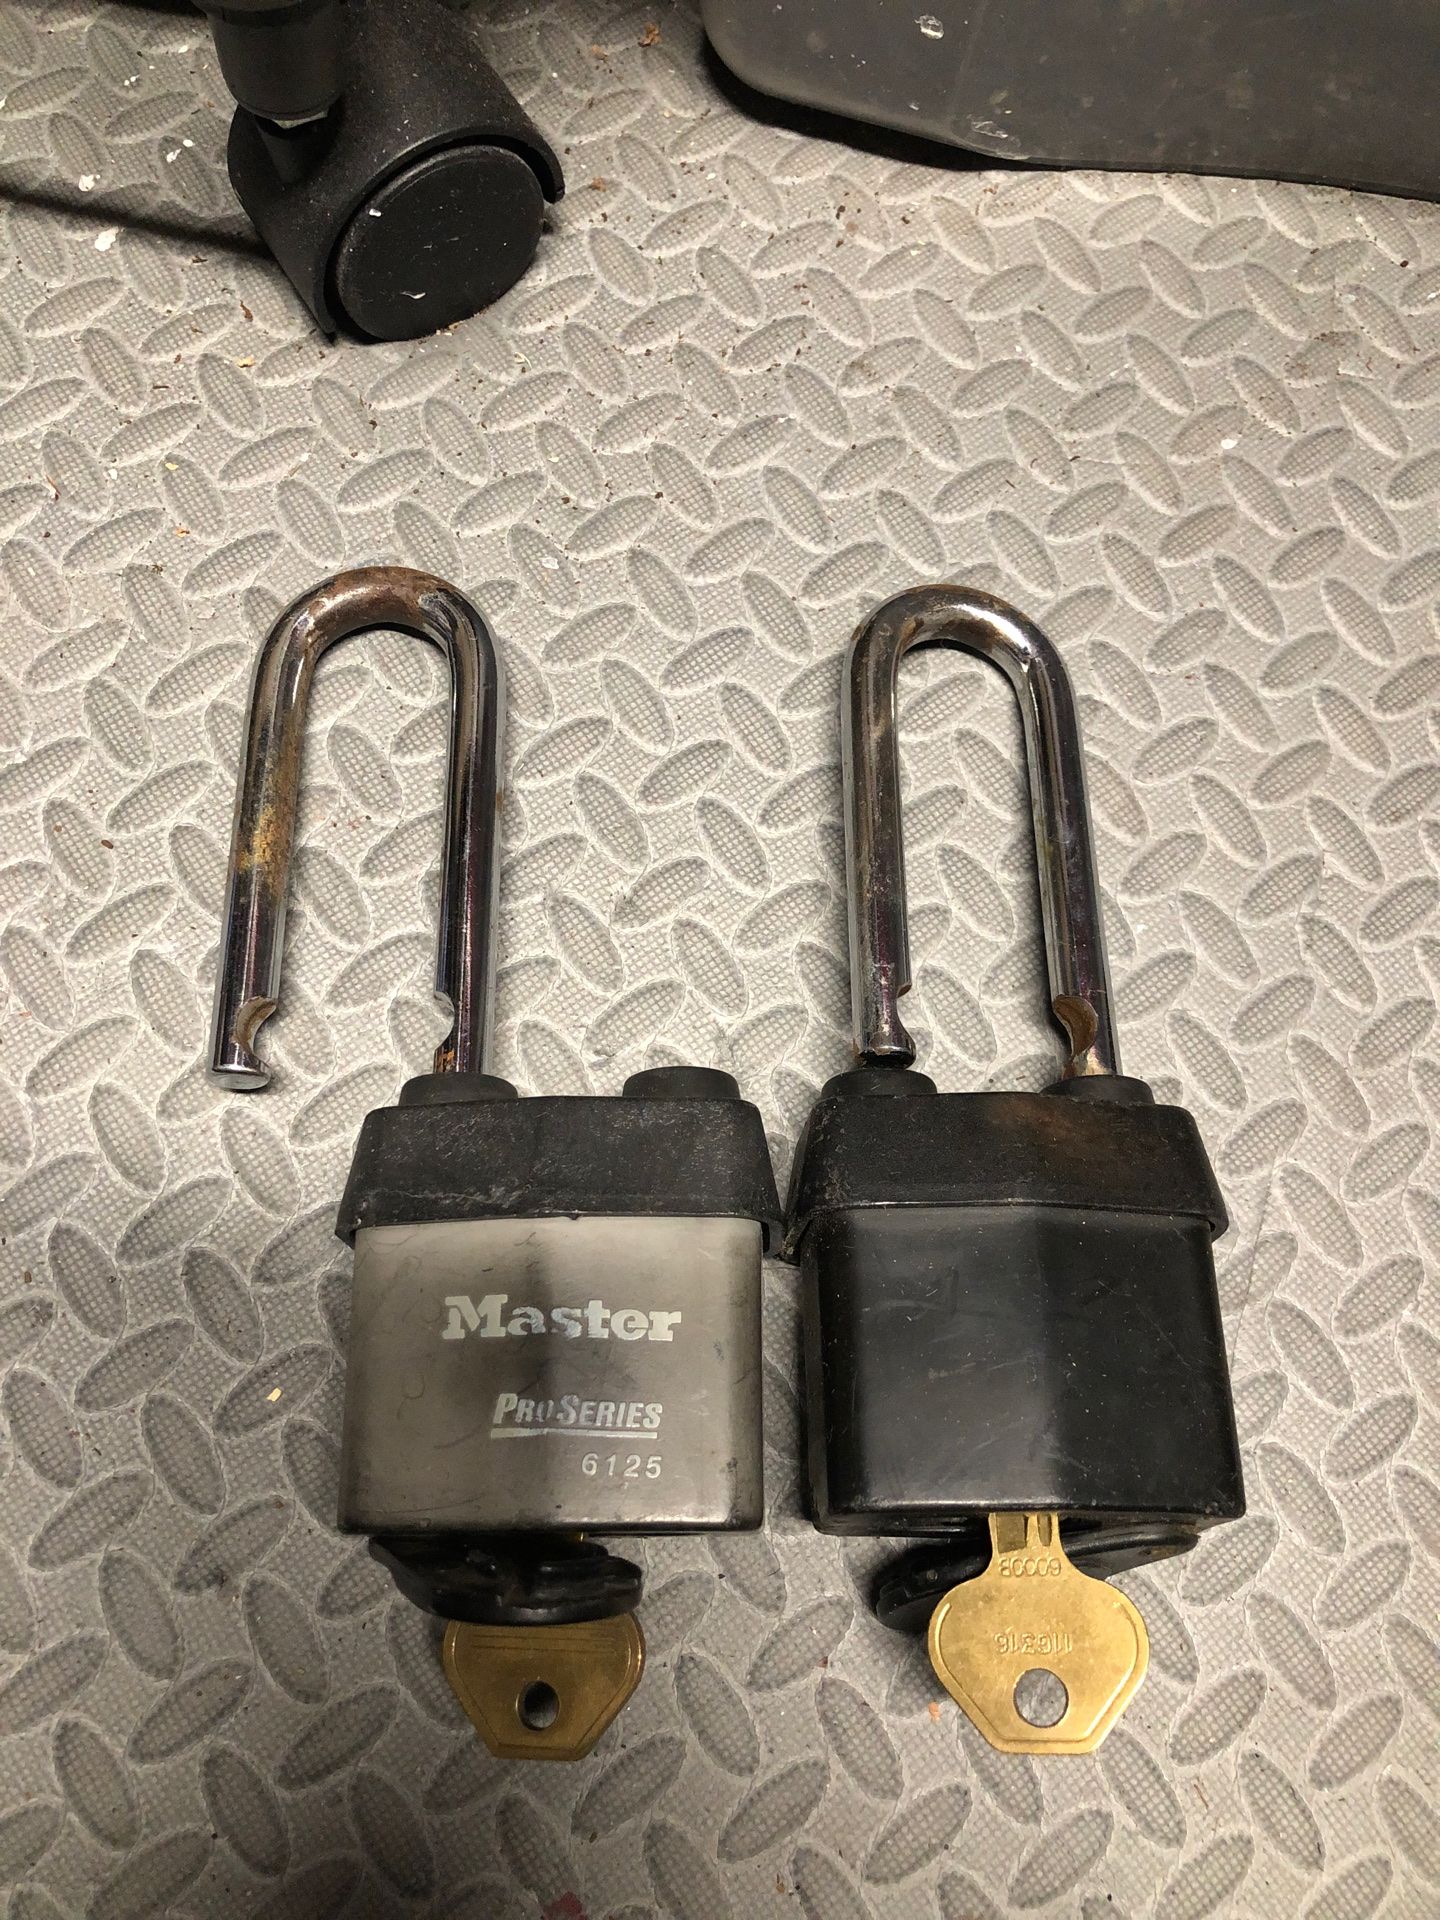 Outdoor locks